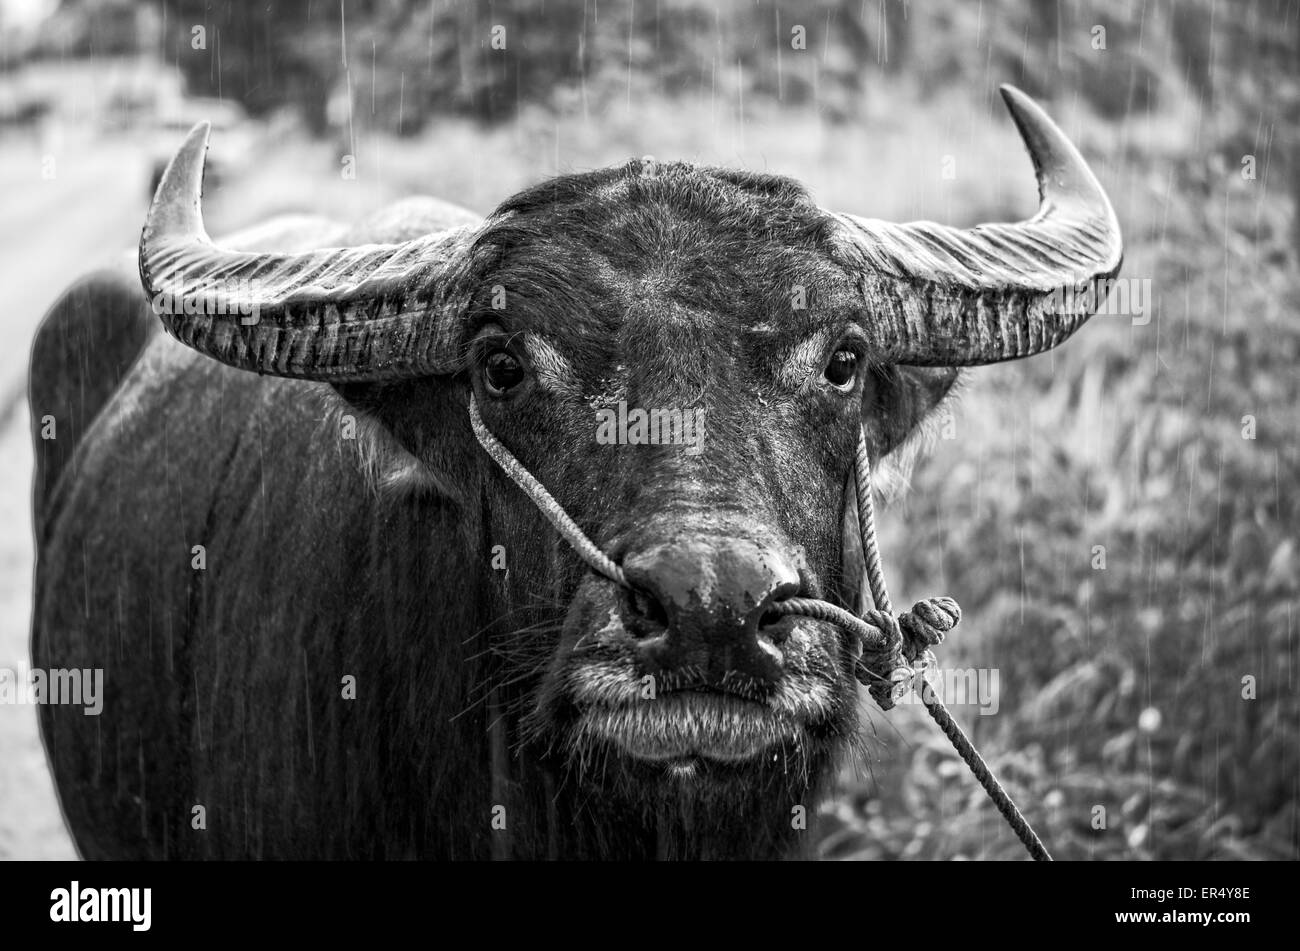 Schwarz / weiß Foto, schließen nach vorne zu stellen, der asiatische Wasserbüffel oder Bubalus beispielsweise im Regen, Thailand Stockfoto